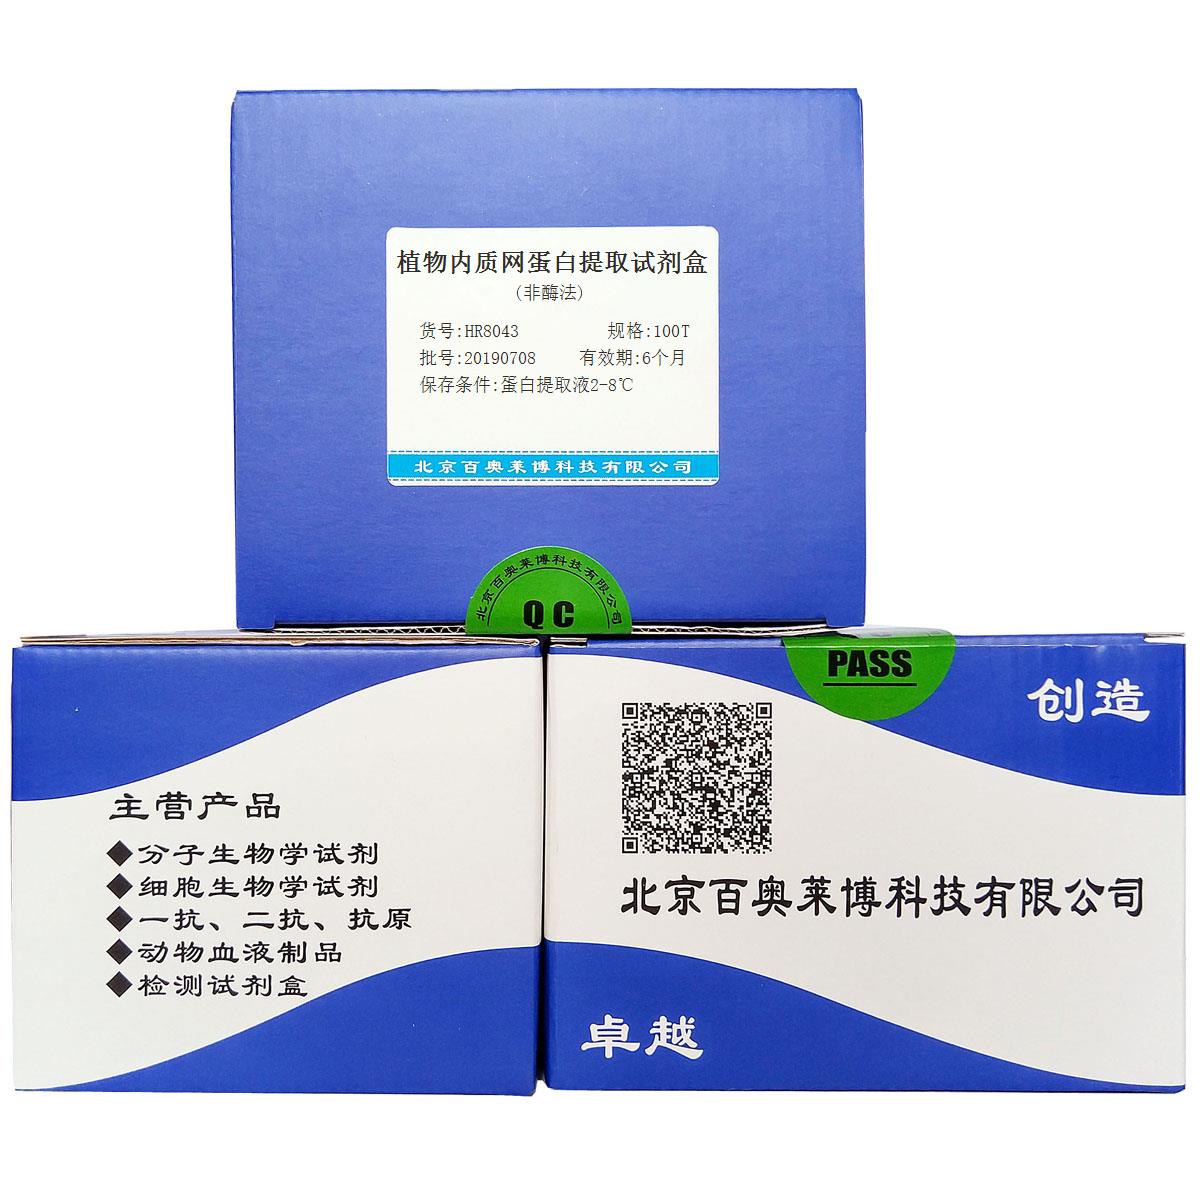 植物内质网蛋白提取试剂盒(非酶法)北京供应商